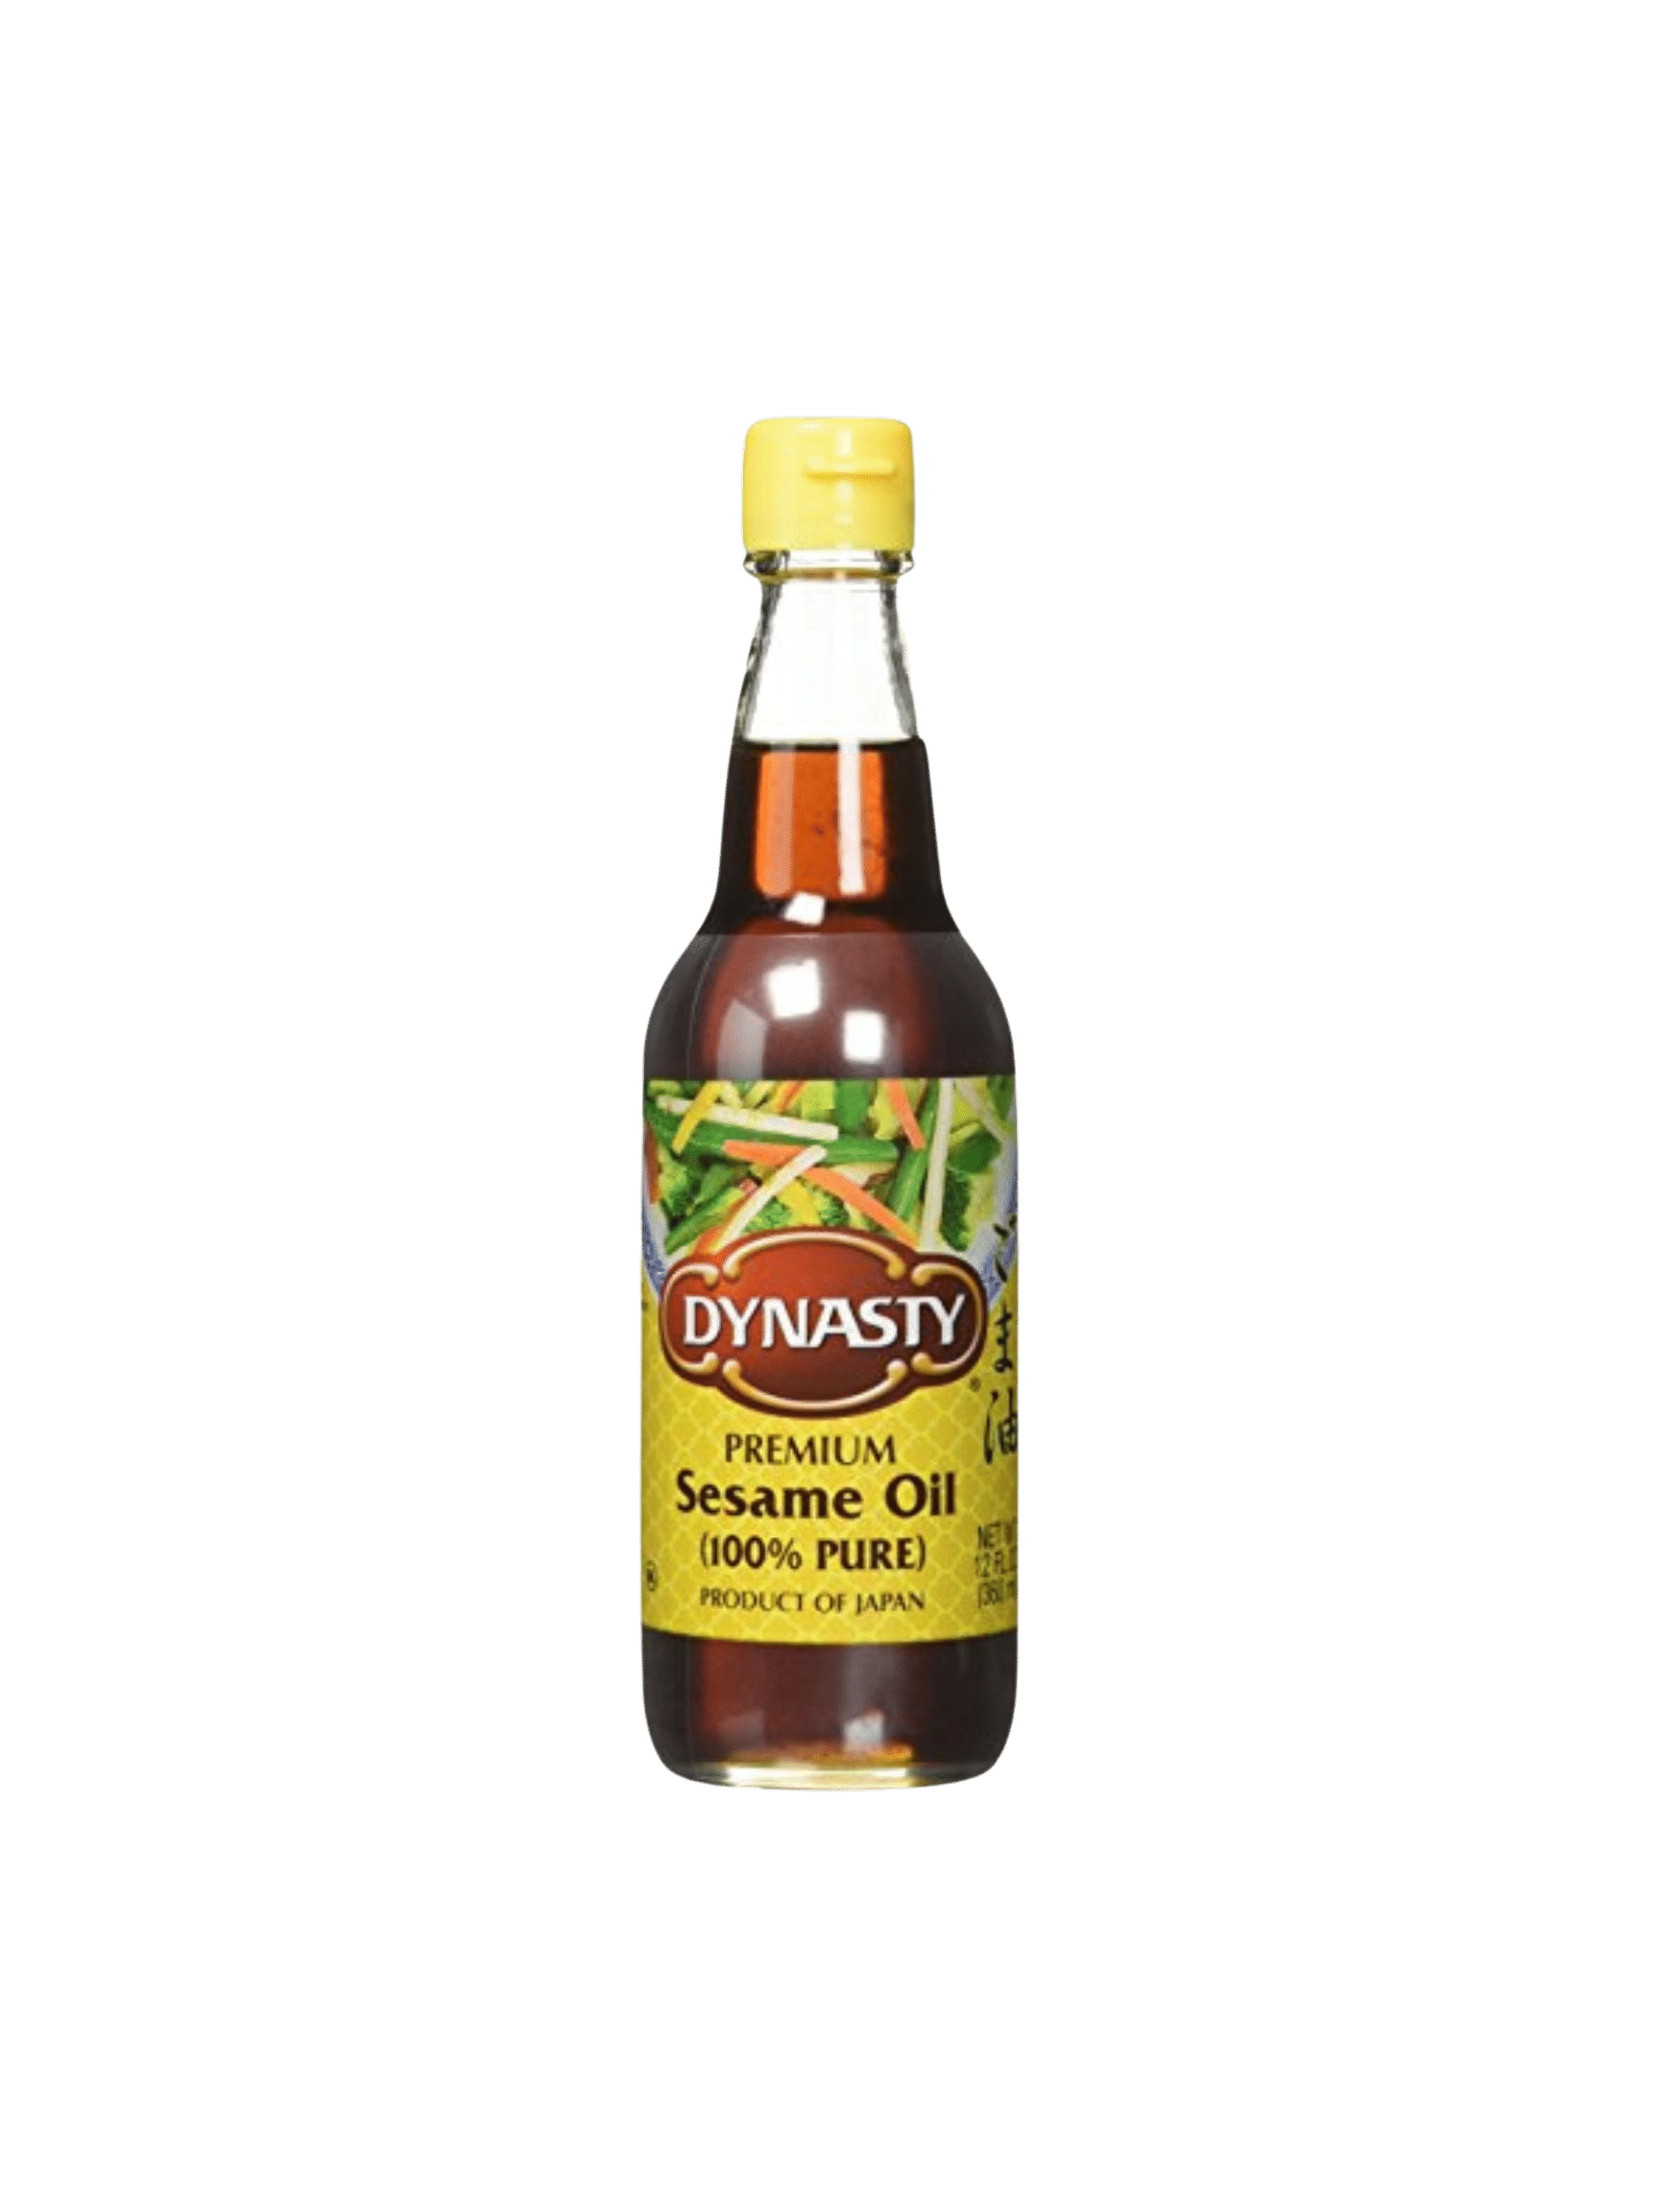 Dynasty Sesame oil.png